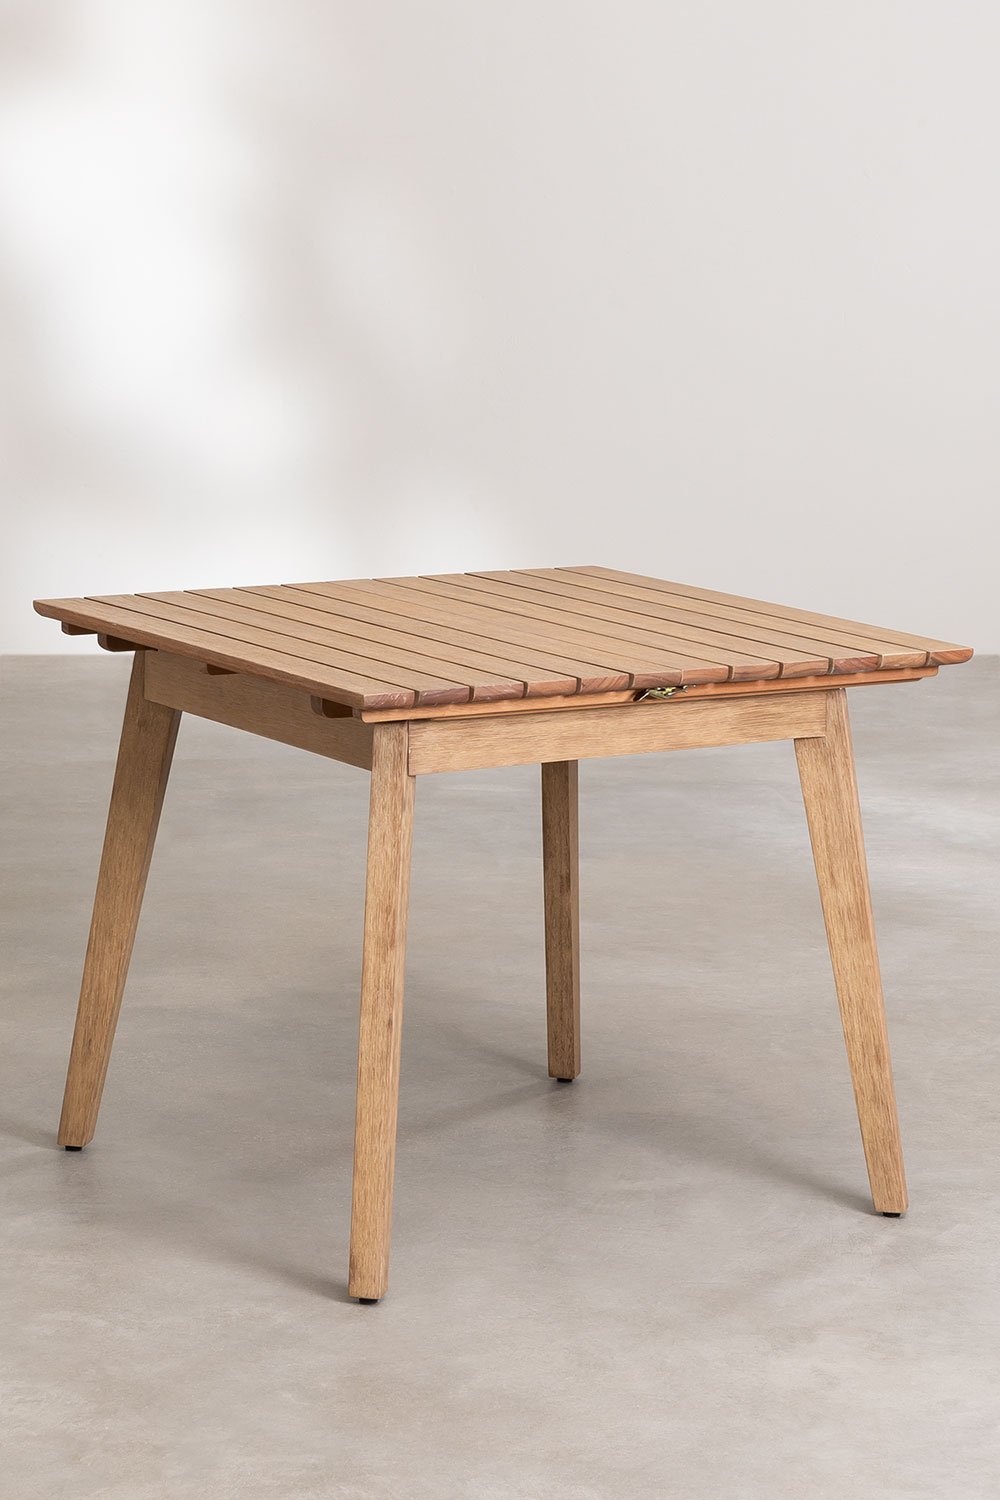 Table rectangulaire en bois (150x90 cm) Elba - SKLUM